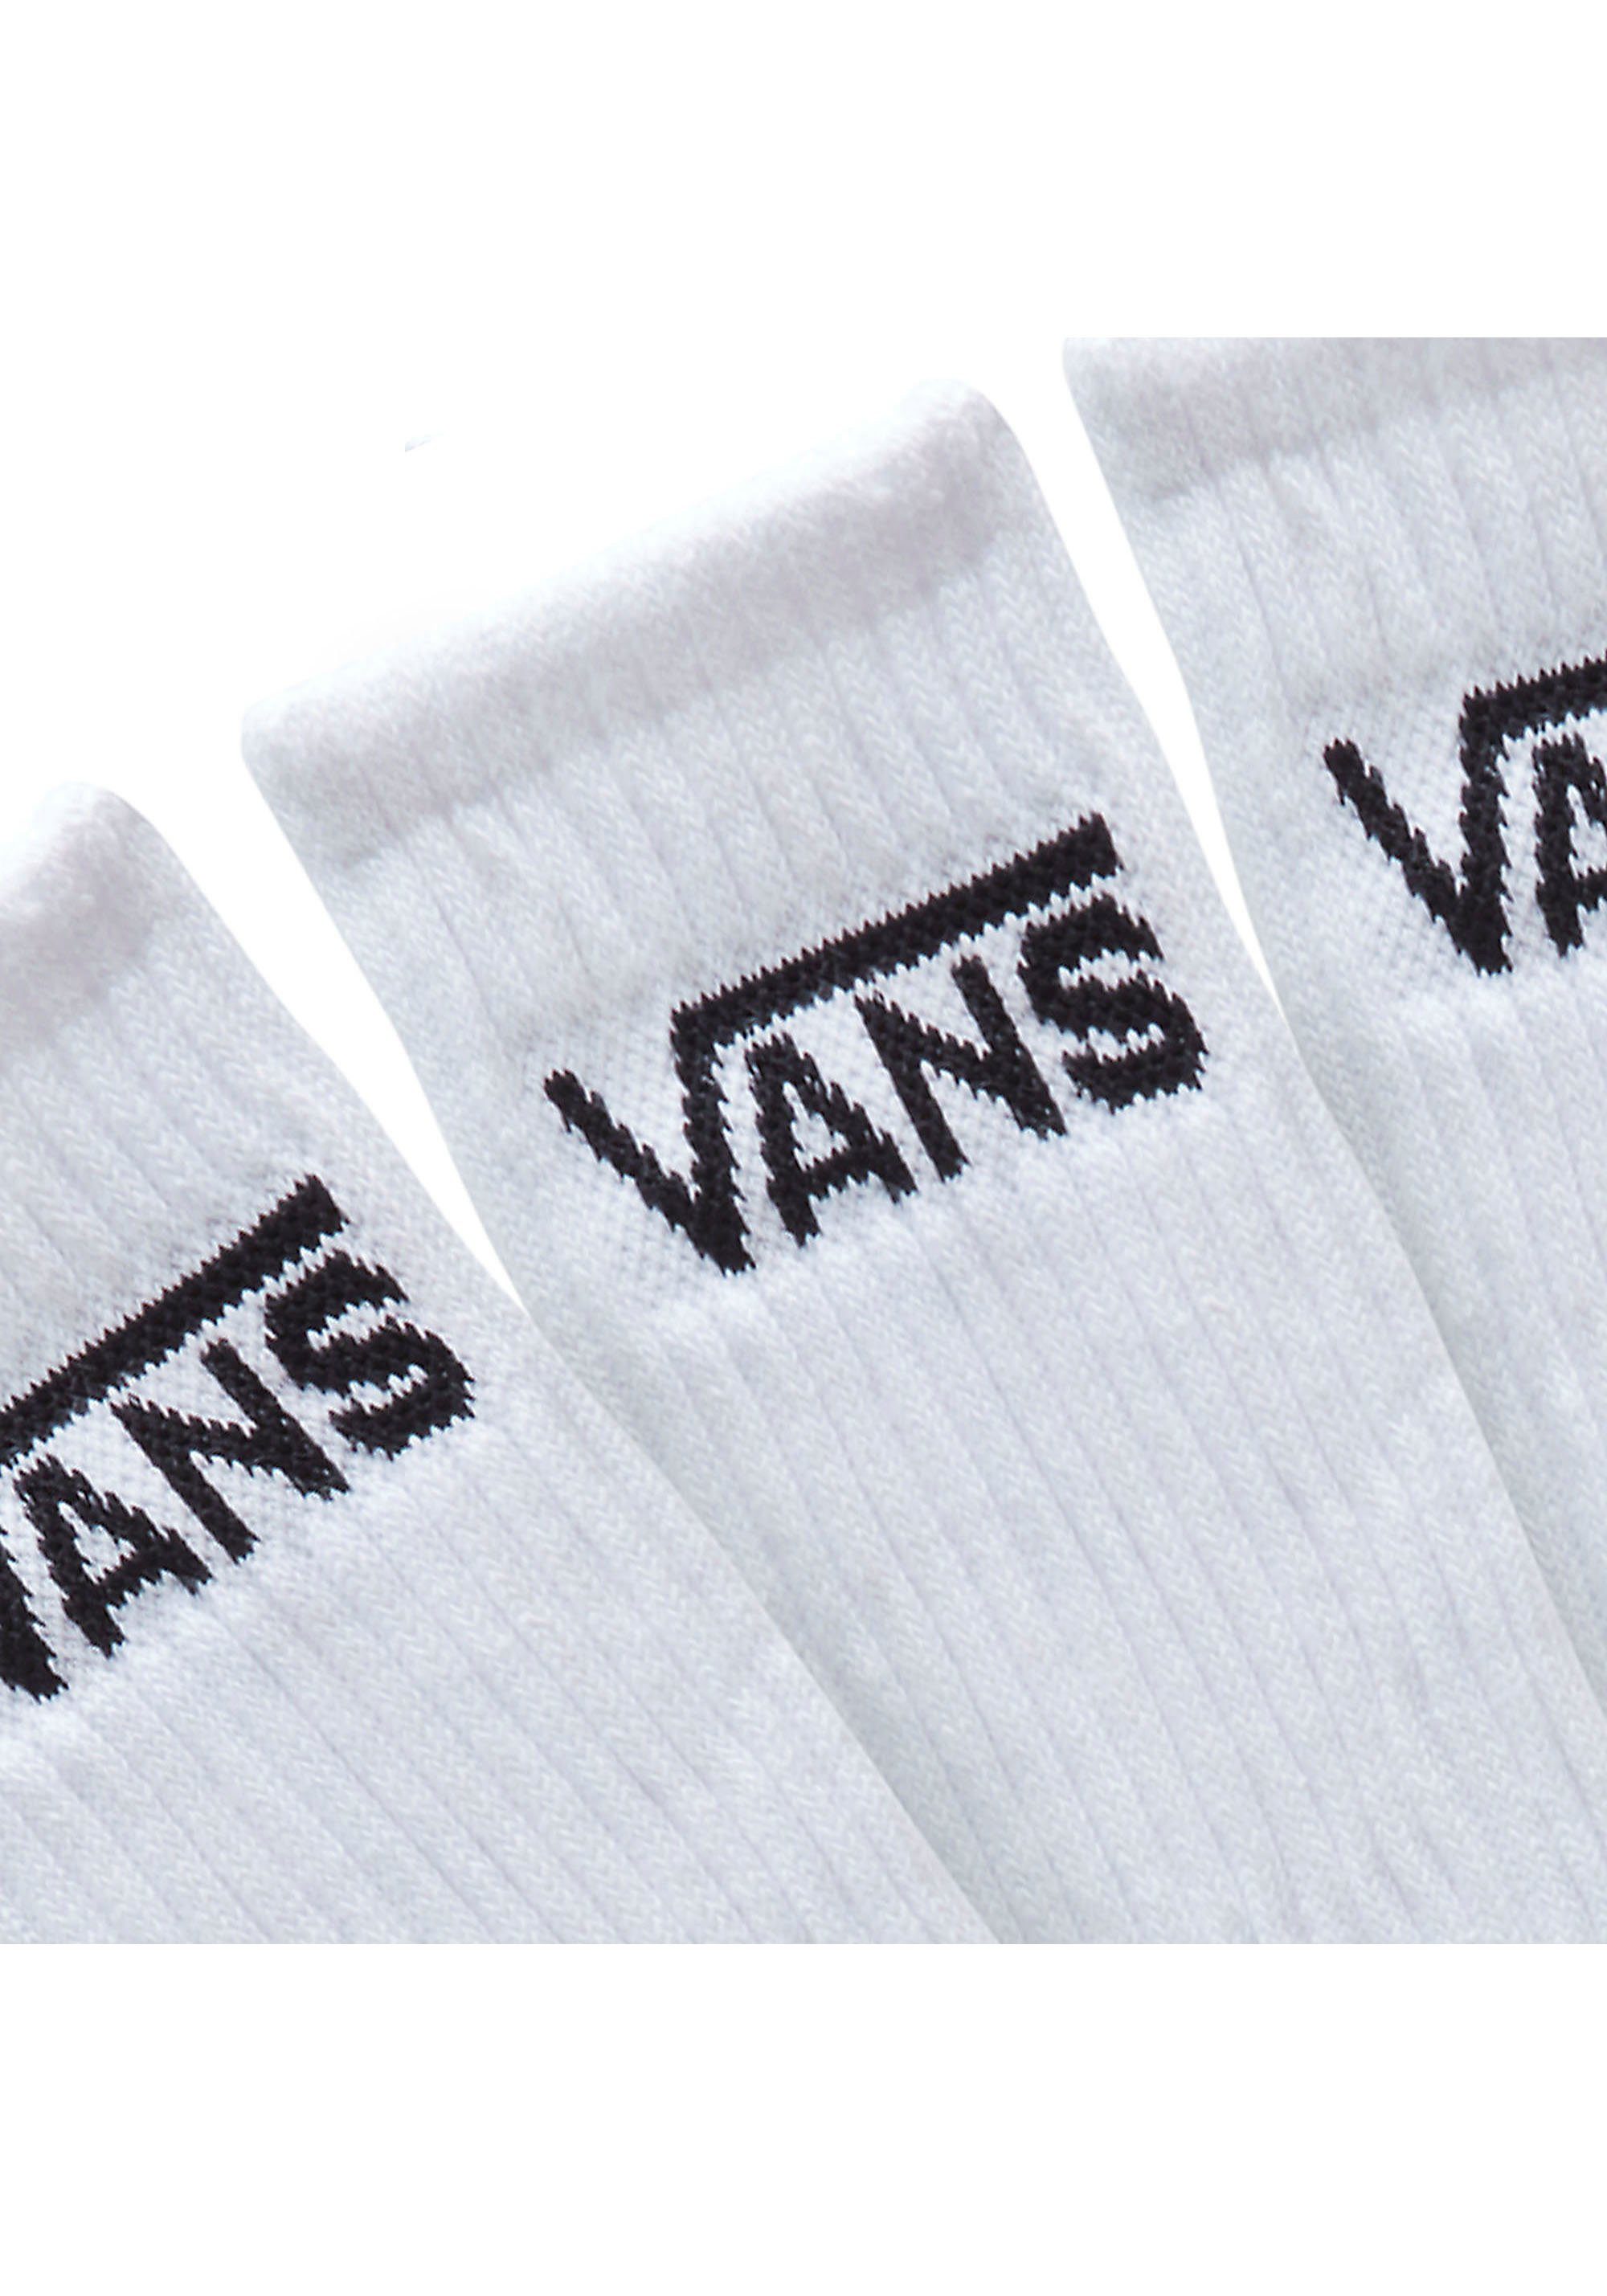 Vans Socken Classic weiß 3x Logoschriftzug (3-Paar) klassischem mit Crew